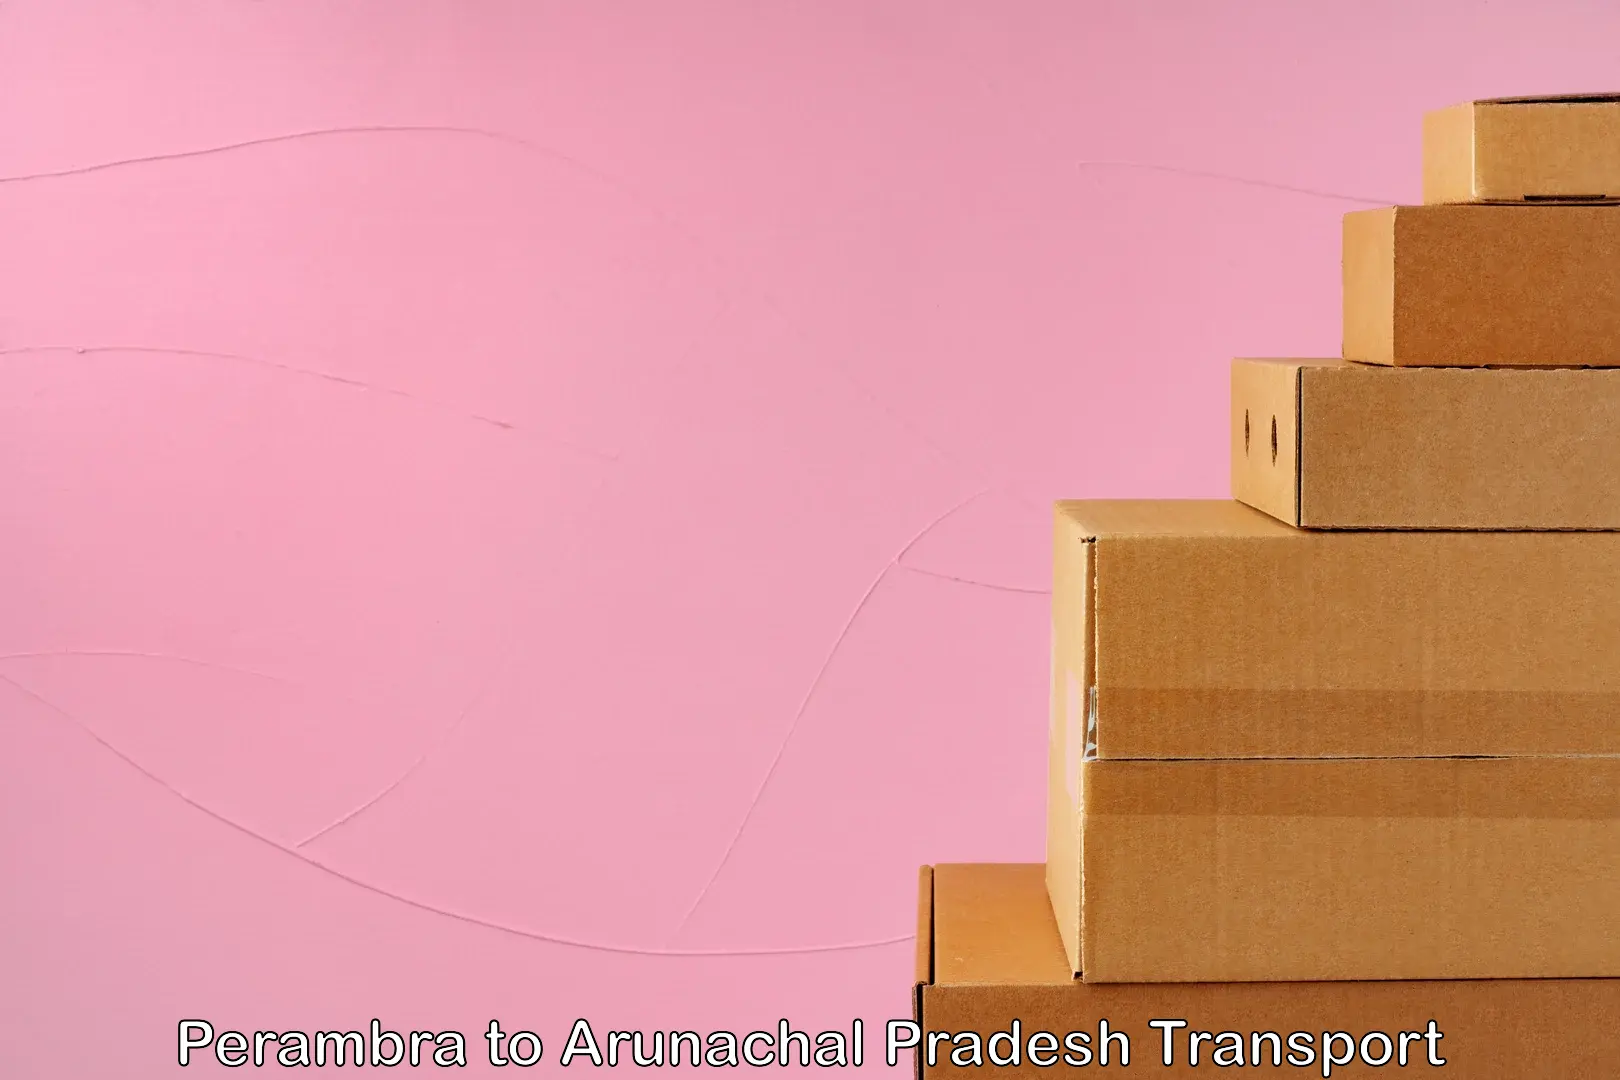 Land transport services Perambra to Arunachal Pradesh